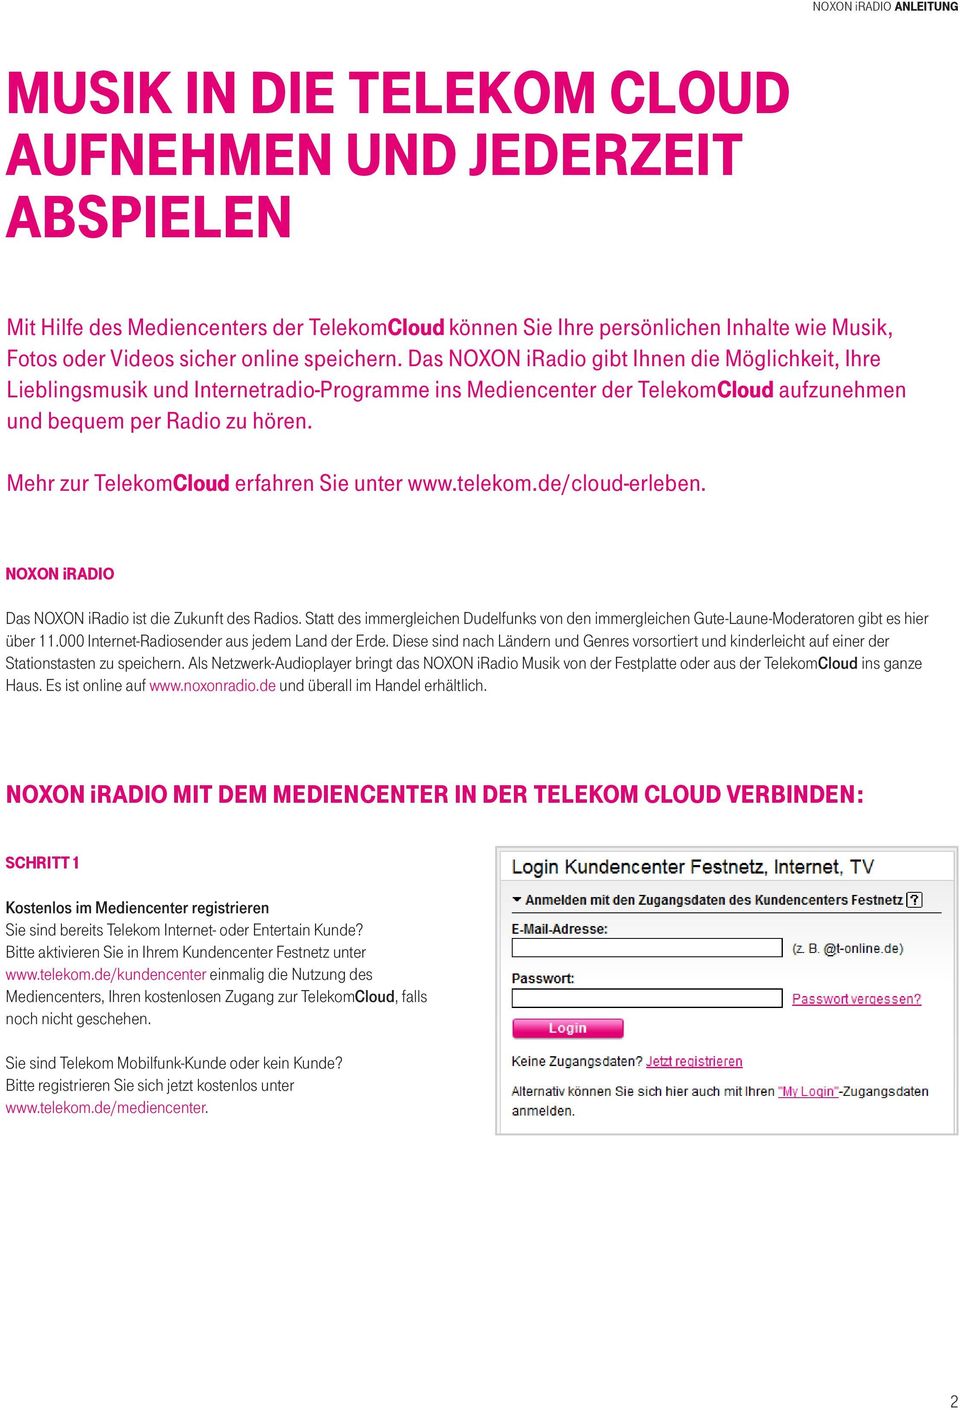 Mehr zur TelekomCloud erfahren Sie unter www.telekom.de/cloud-erleben. NOXON iradio Das NOXON iradio ist die Zukunft des Radios.